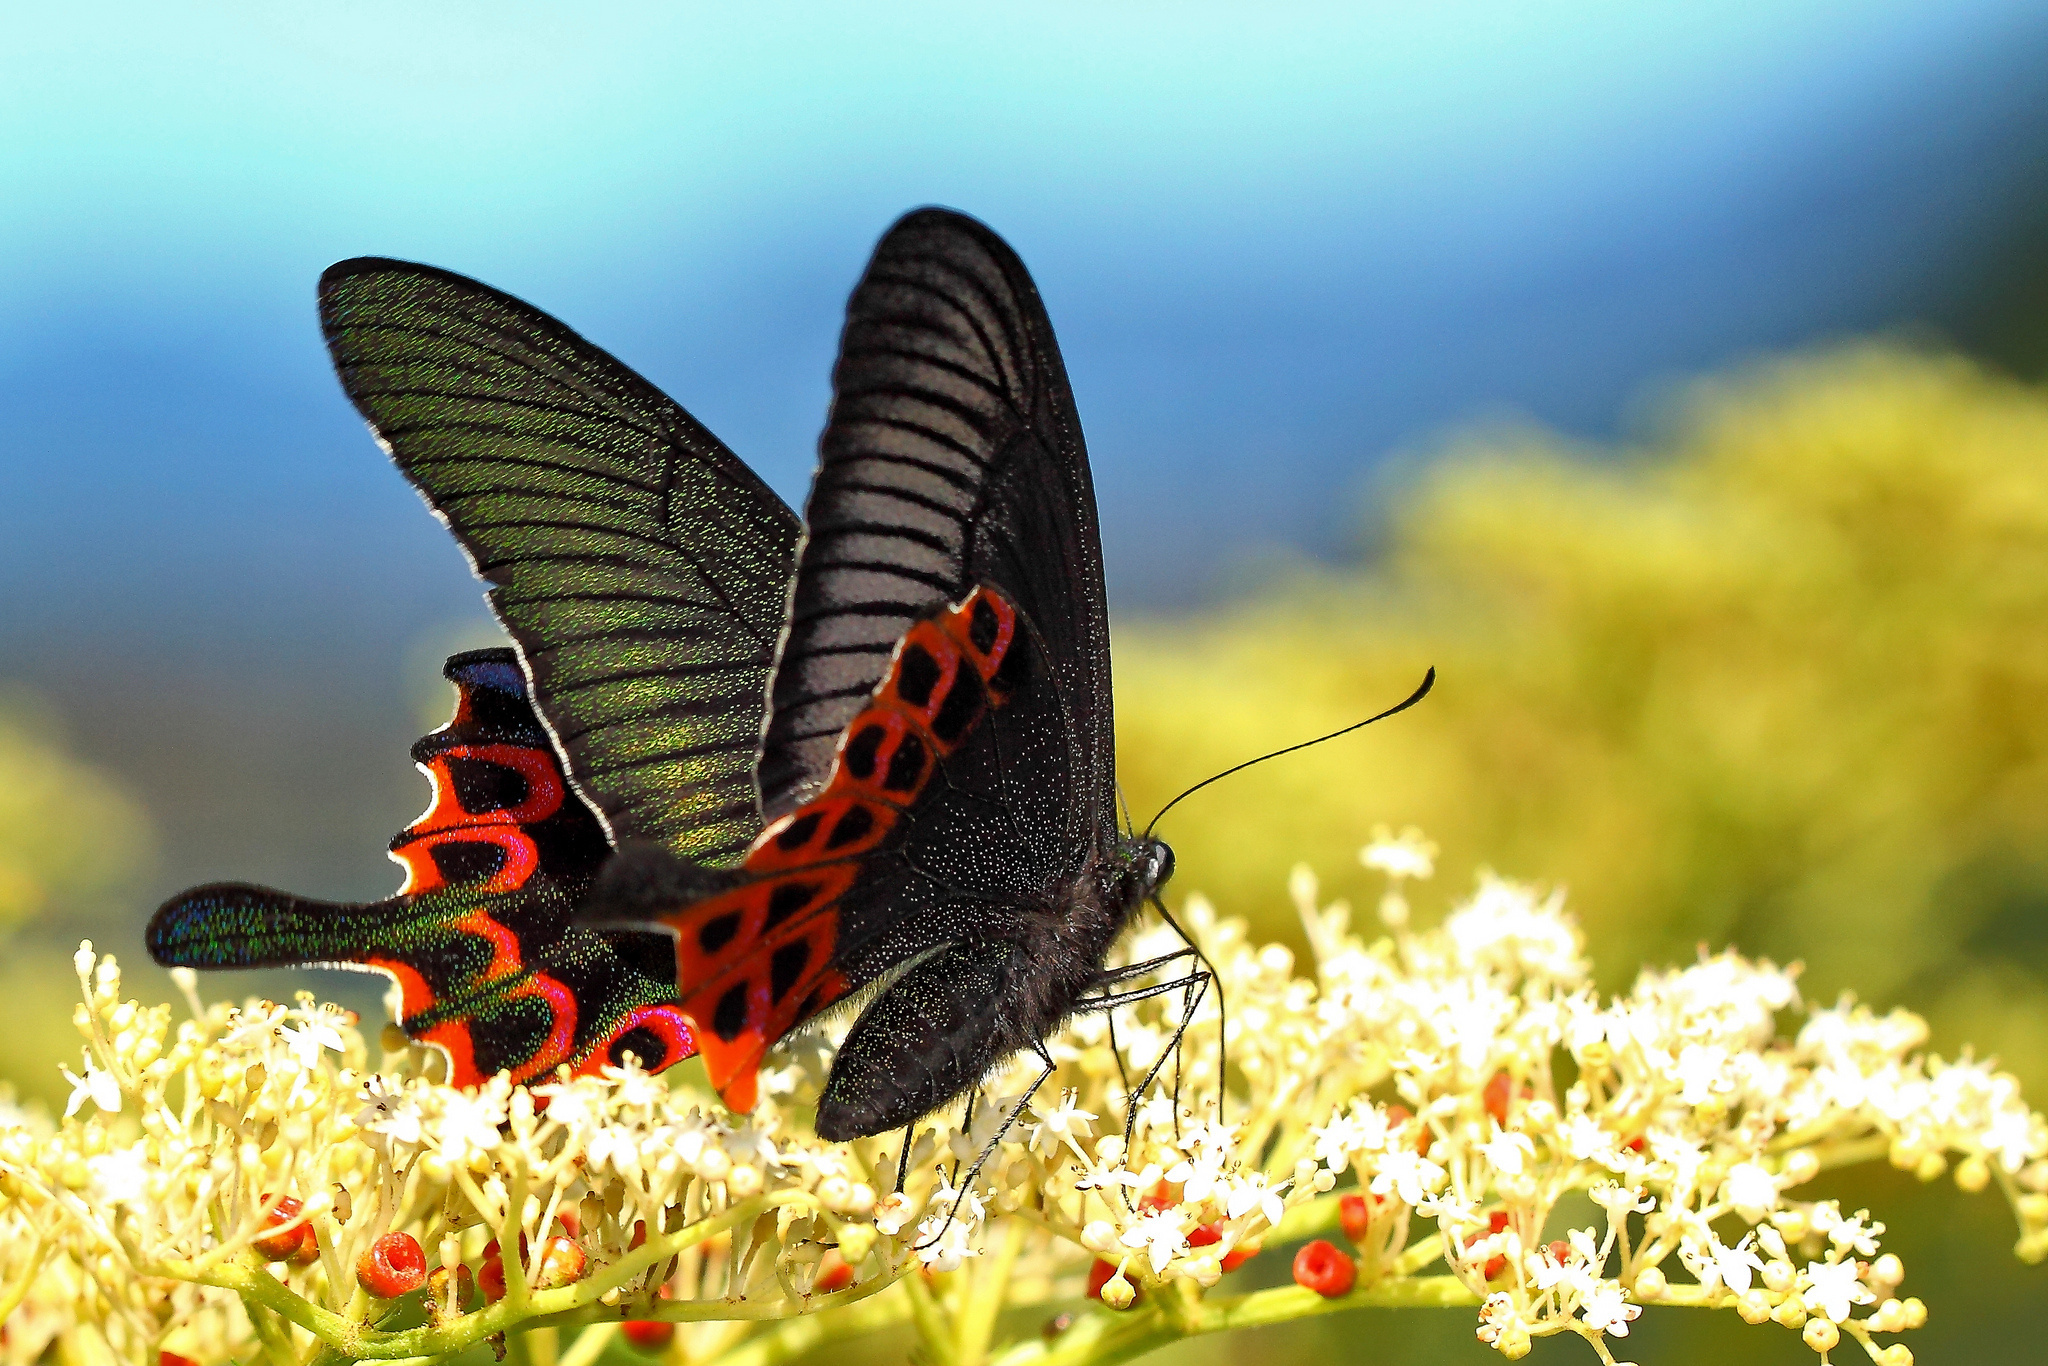 Descarga gratuita de fondo de pantalla para móvil de Animales, Insecto, Mariposa, Fotografía.